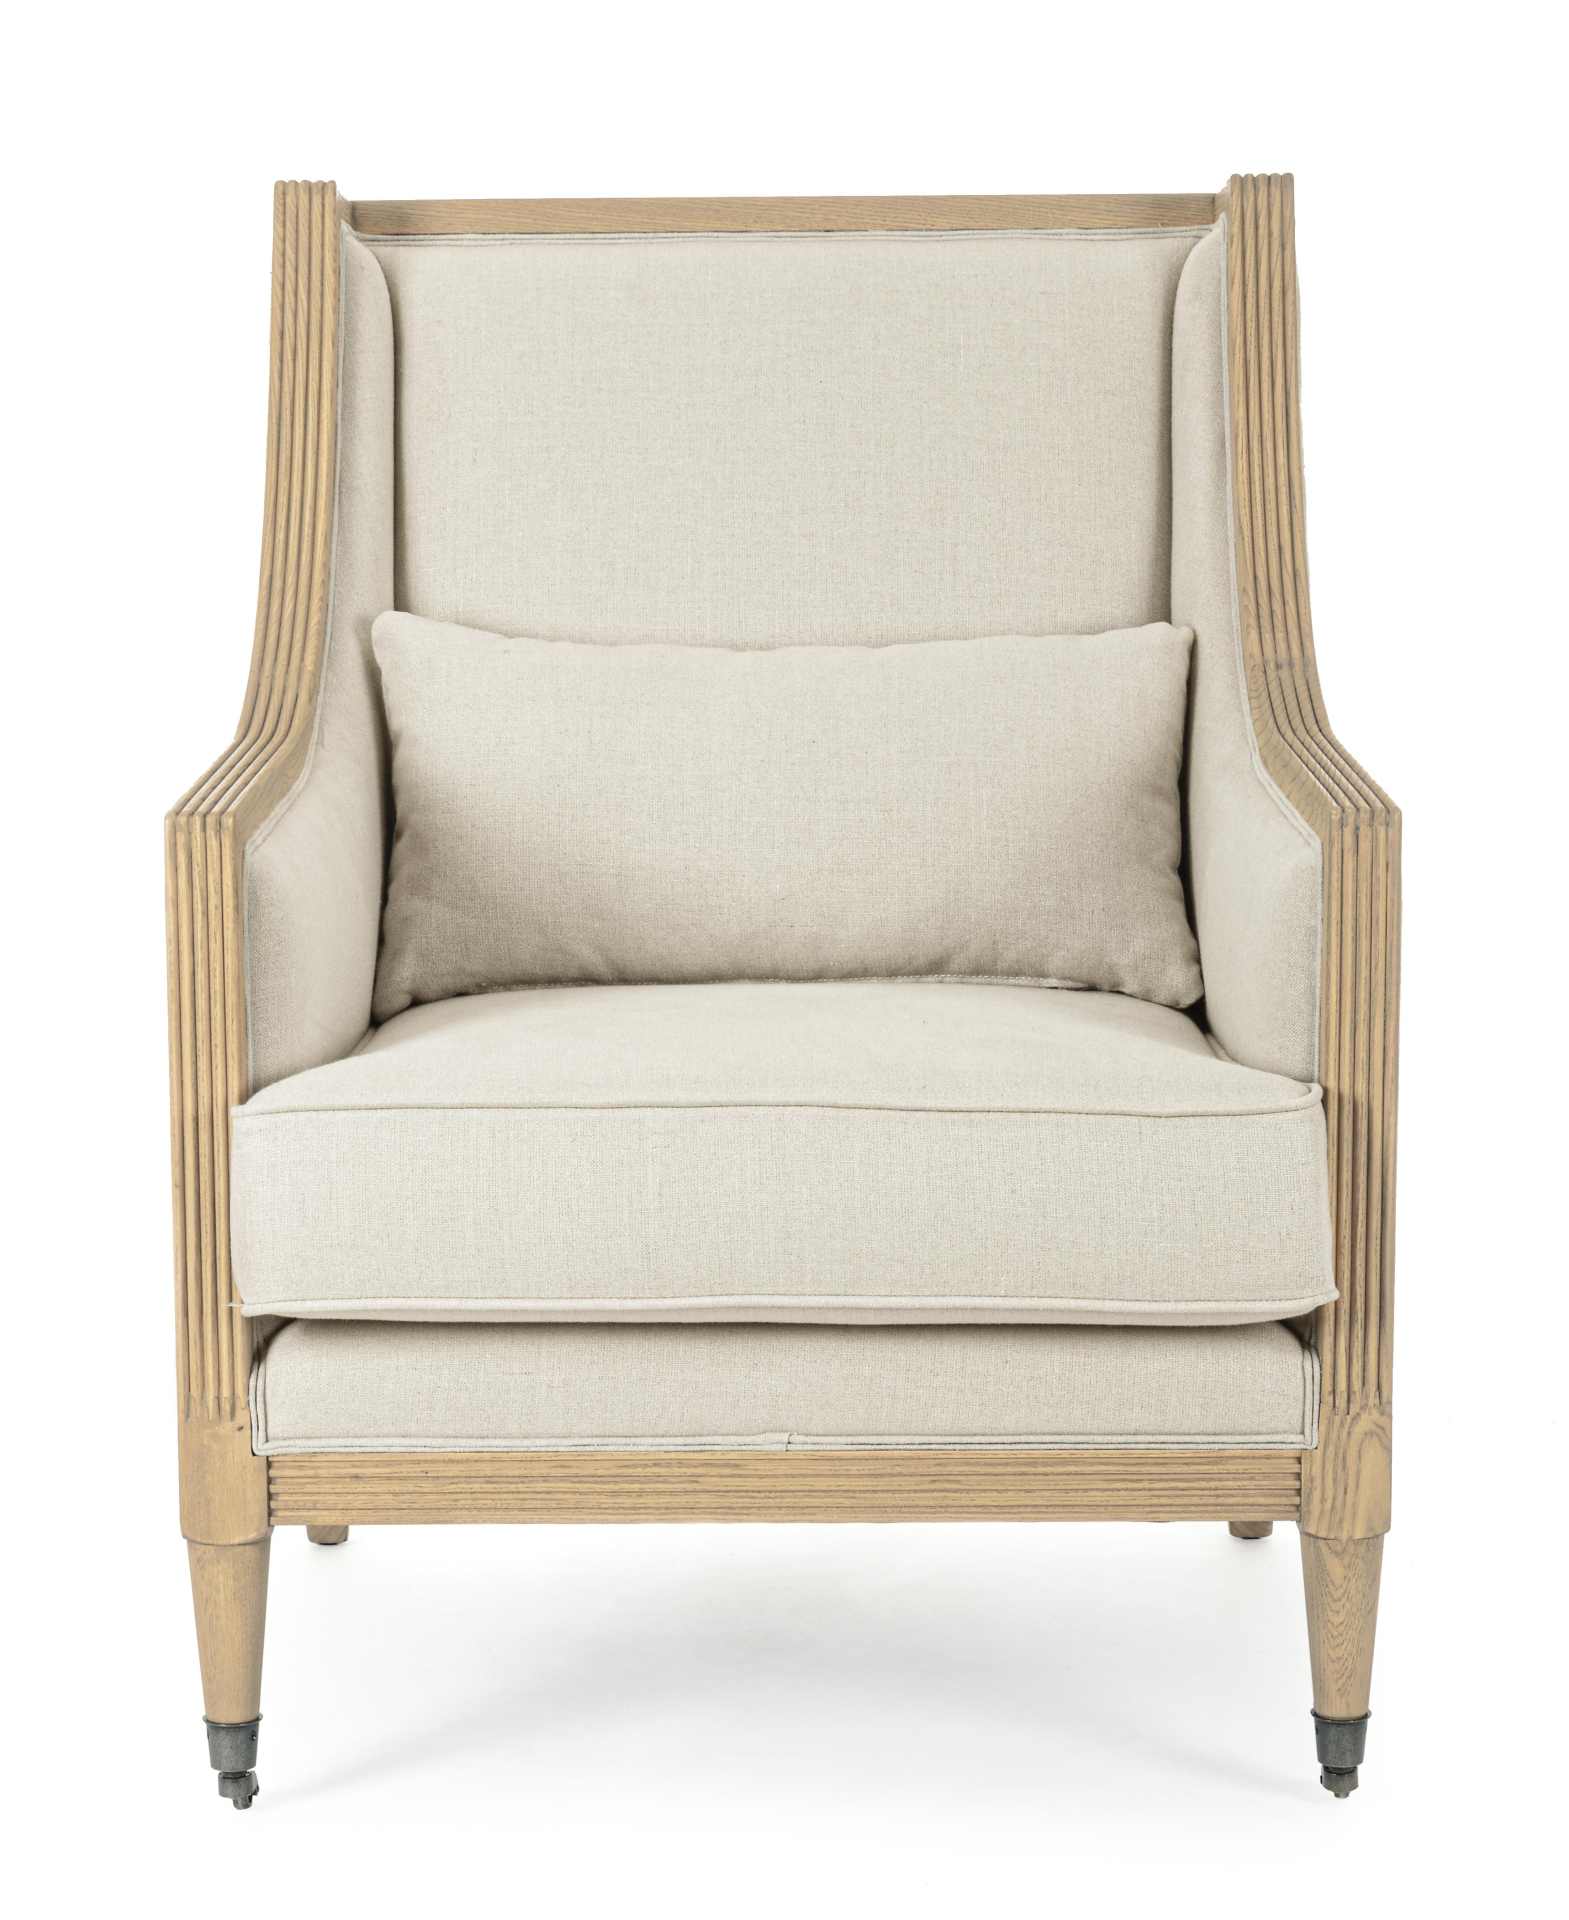 Der Sessel Marlin überzeugt mit seinem klassischen Design. Gefertigt wurde er aus Stoff, welcher einen natürlichen Farbton besitzt. Das Gestell ist aus Eschenholz und hat eine natürliche Farbe. Der Sessel besitzt eine Sitzhöhe von 47 cm. Die Breite beträg